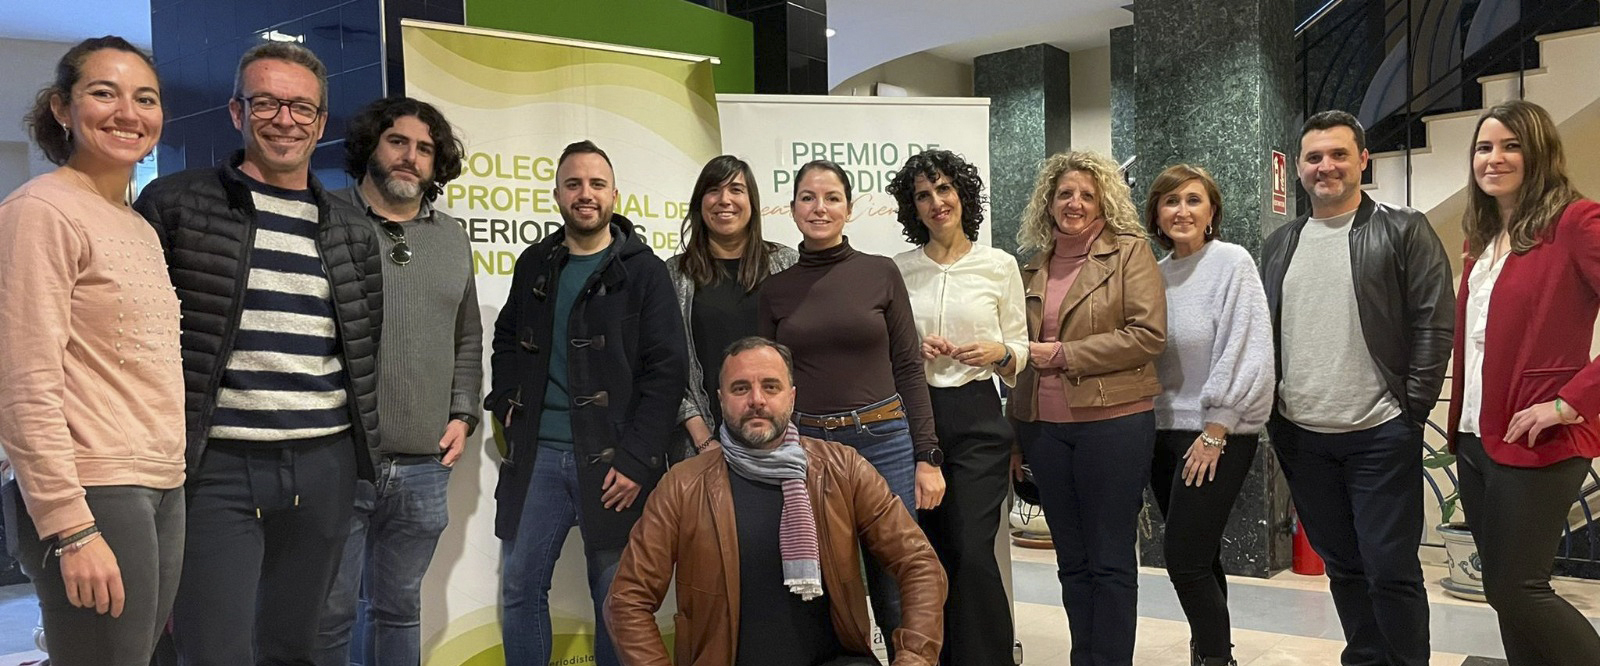 El Colegio de Periodistas de Andalucía en Cádiz elige a su nueva directiva territorial